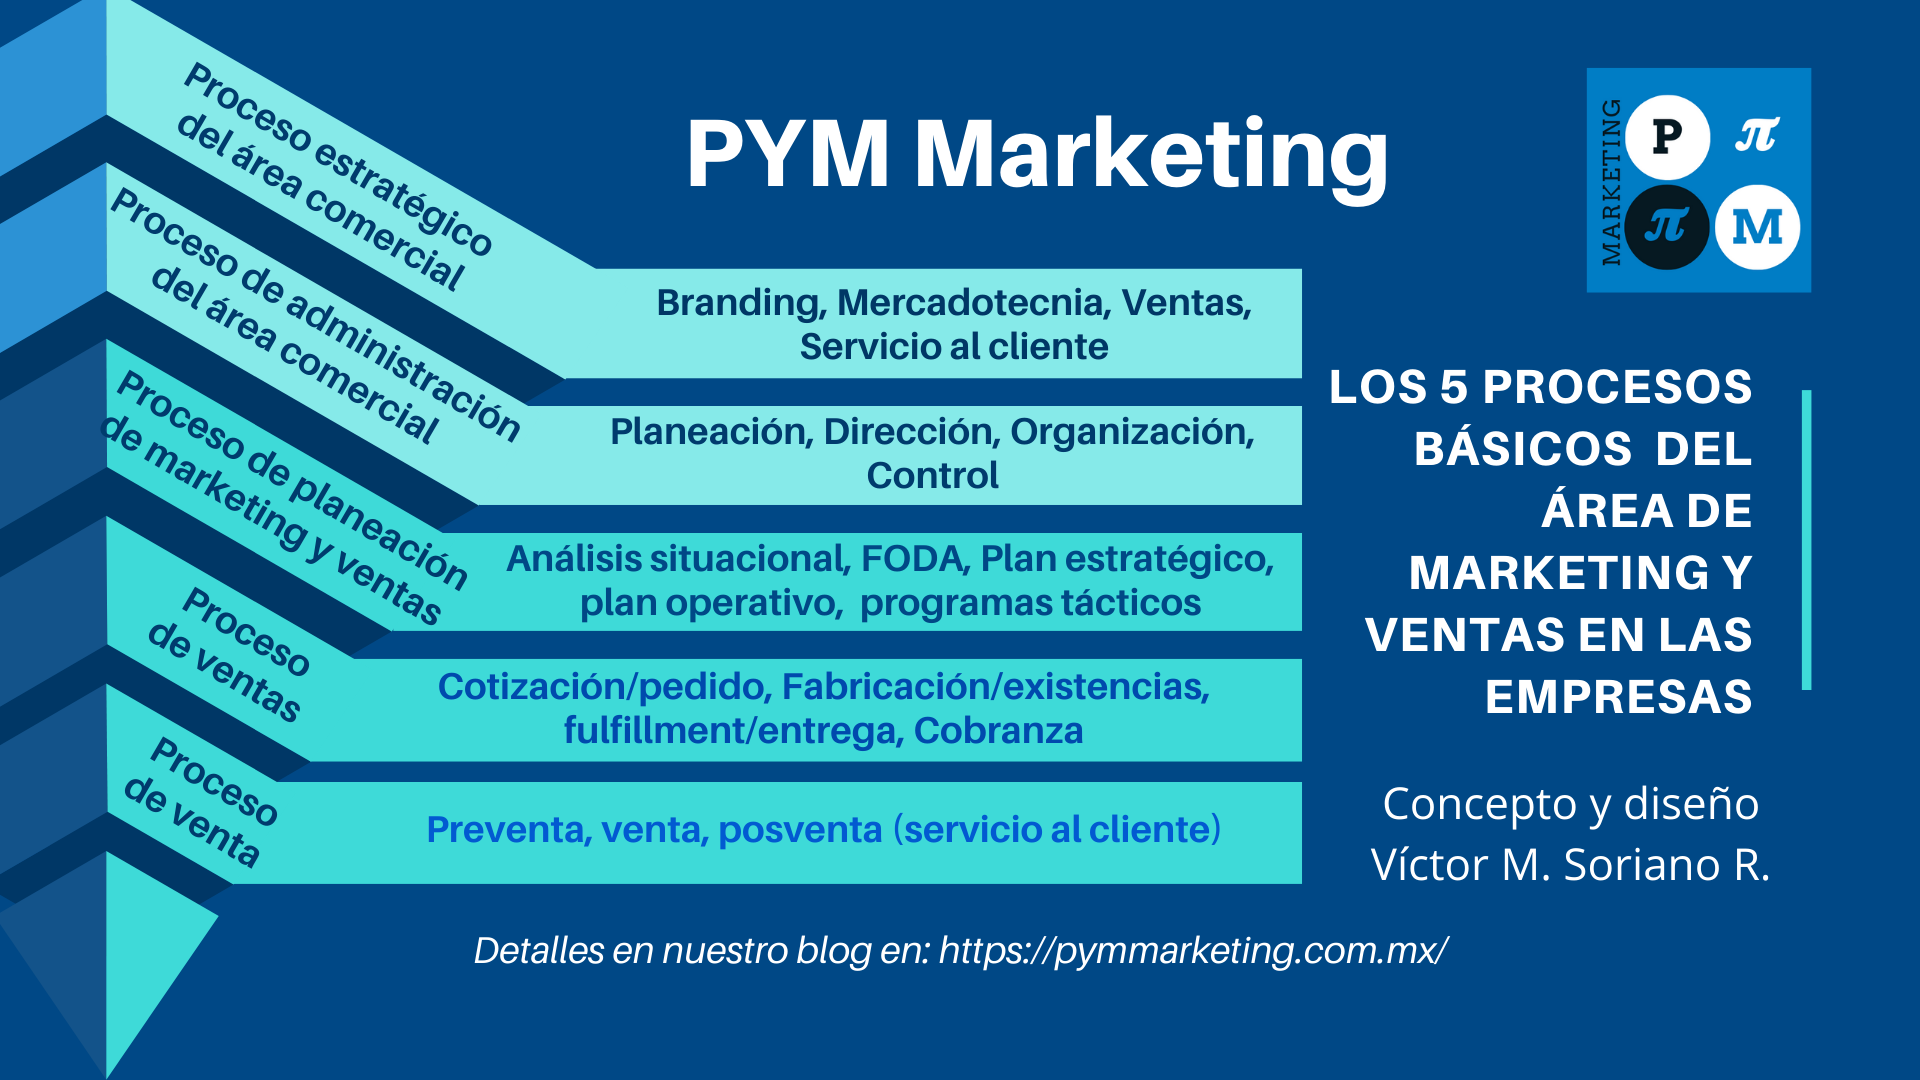 Los 5 Procesos Básicos Del área De Marketing Y Ventas En Las Empresas Pym Marketing 1537